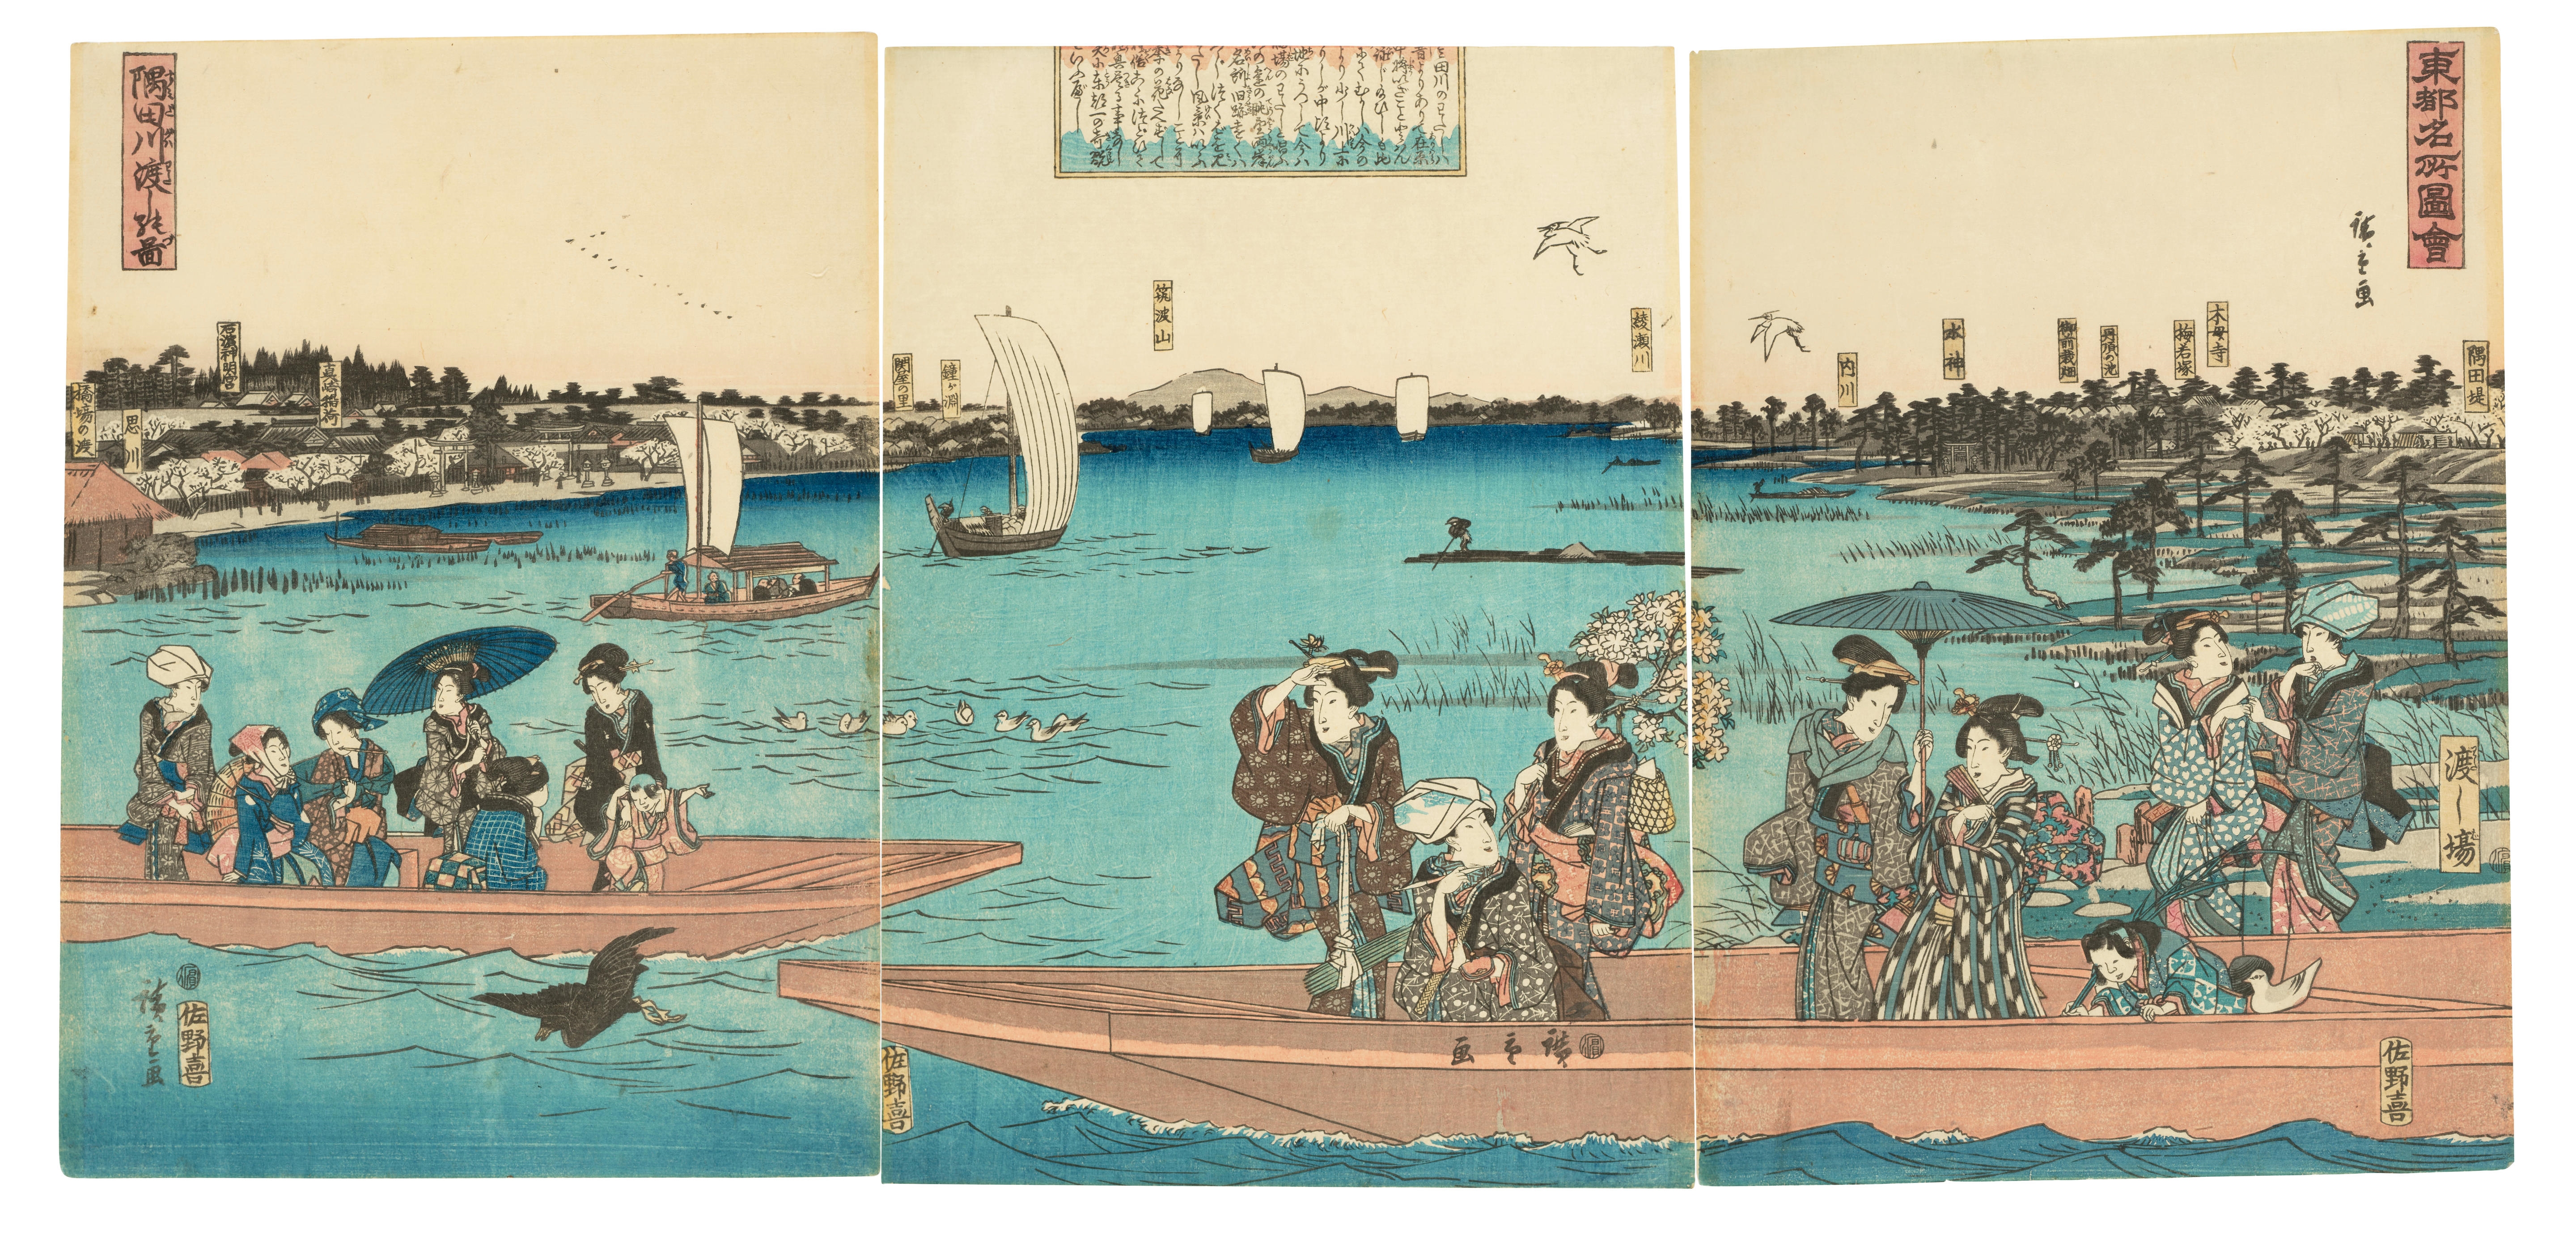 Watashi - Watashi - Posters and Art Prints